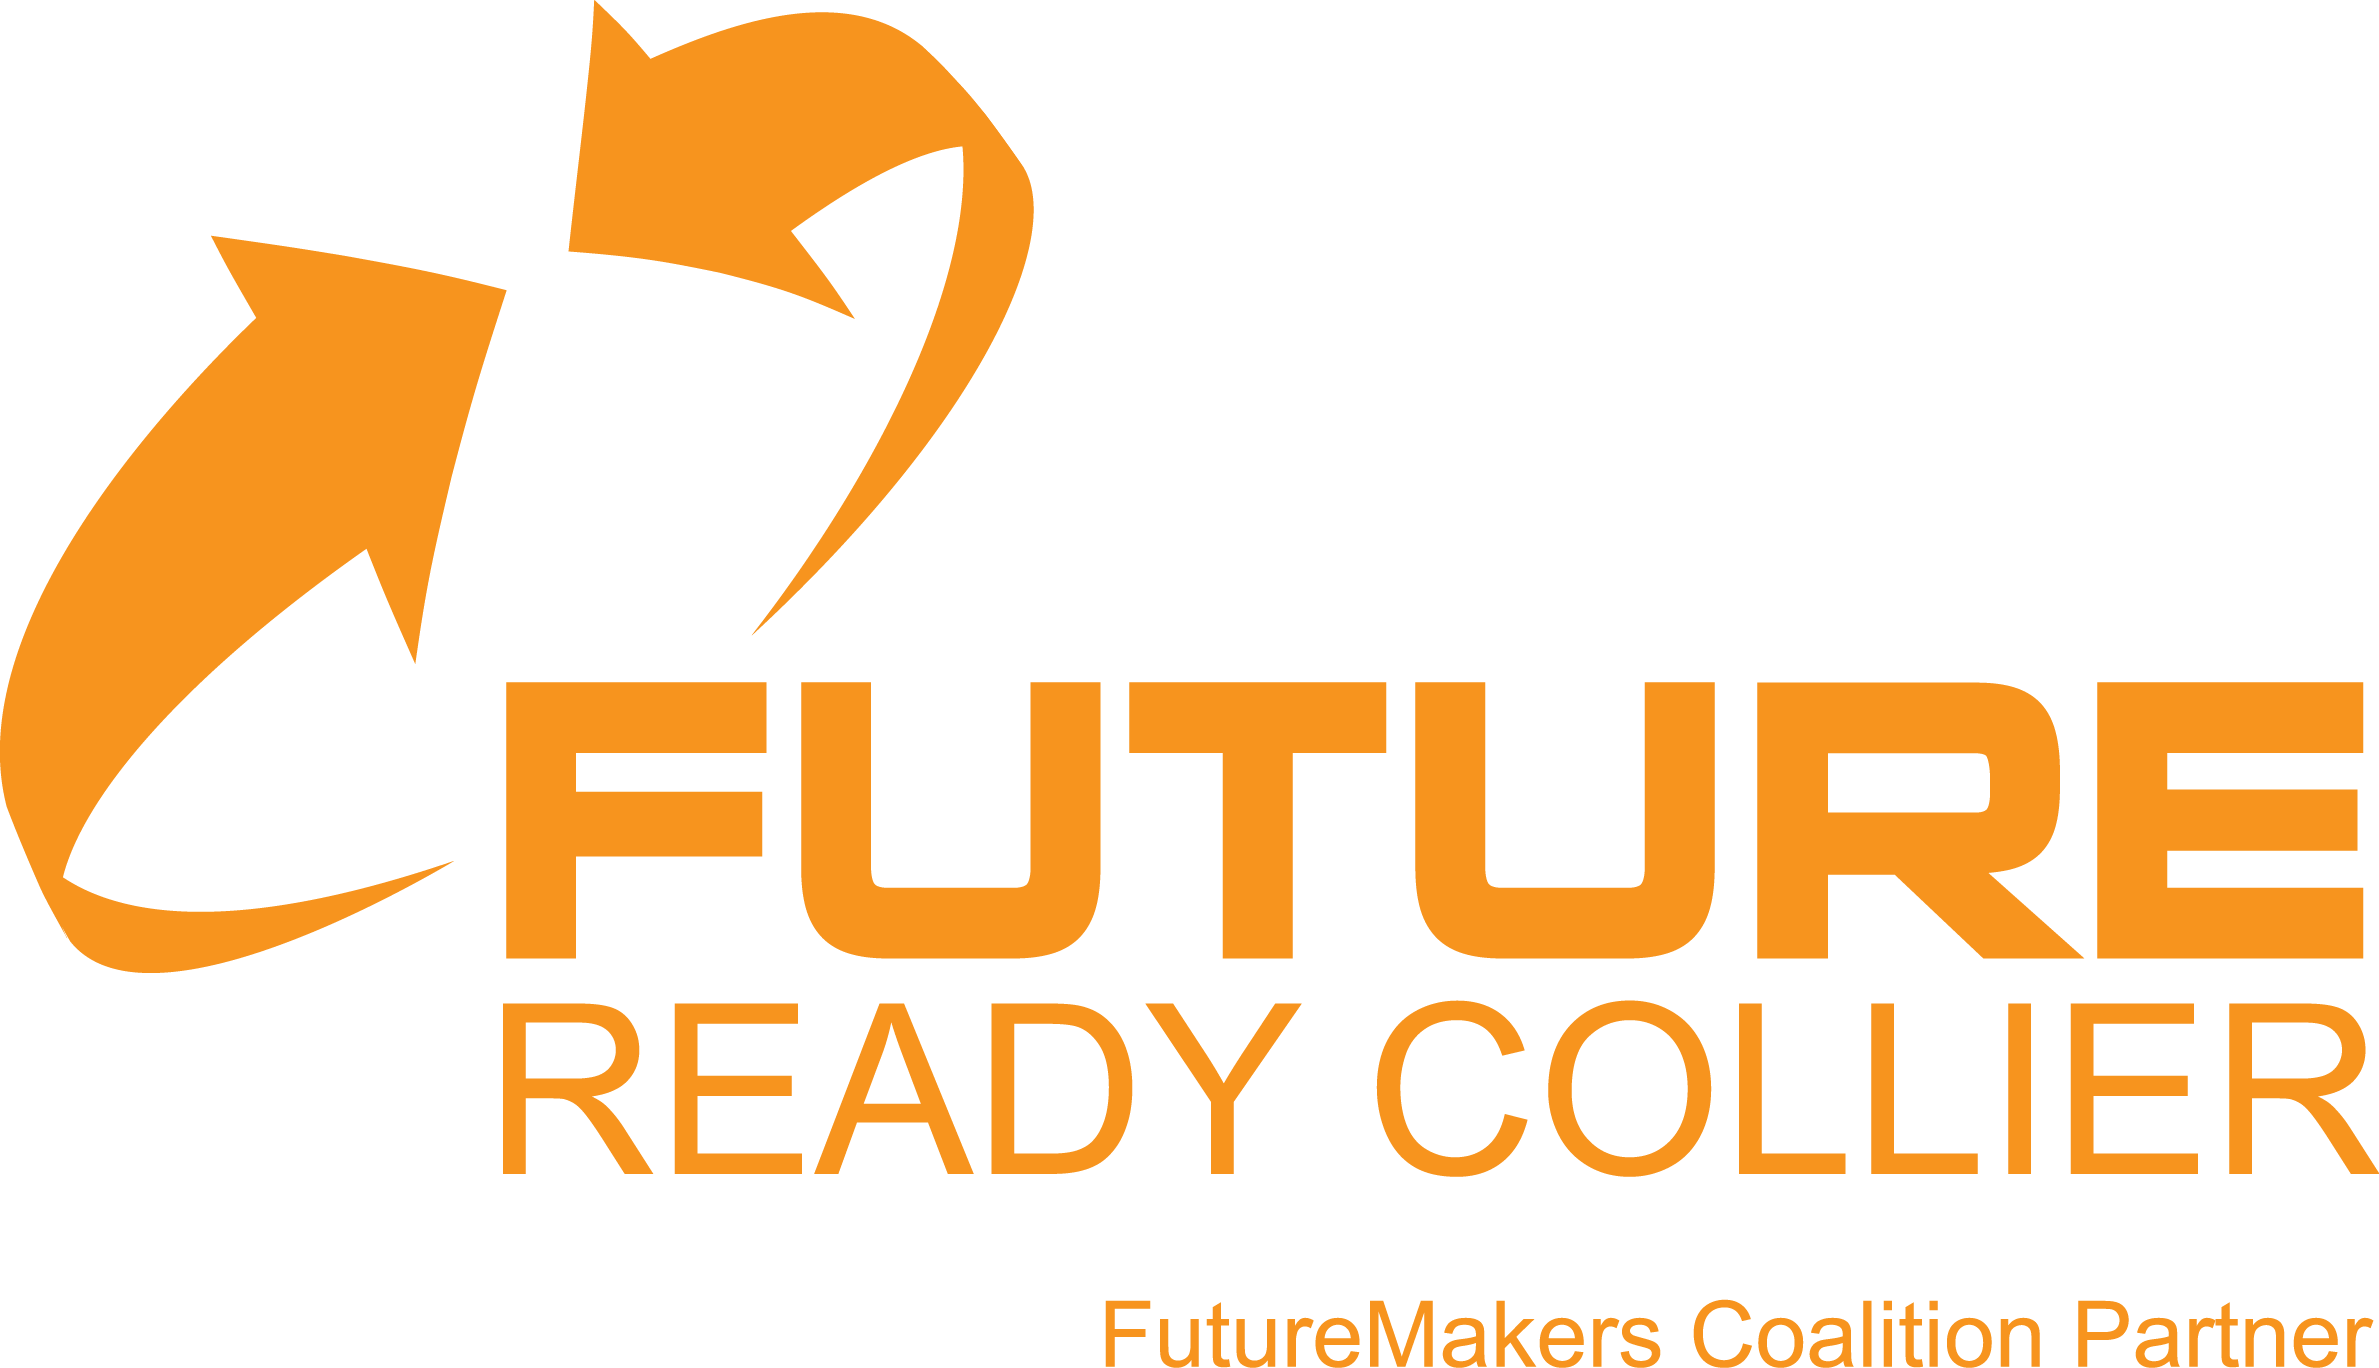 Future Ready Collier Orange Logo | Future Ready Collier - Naples, Florida